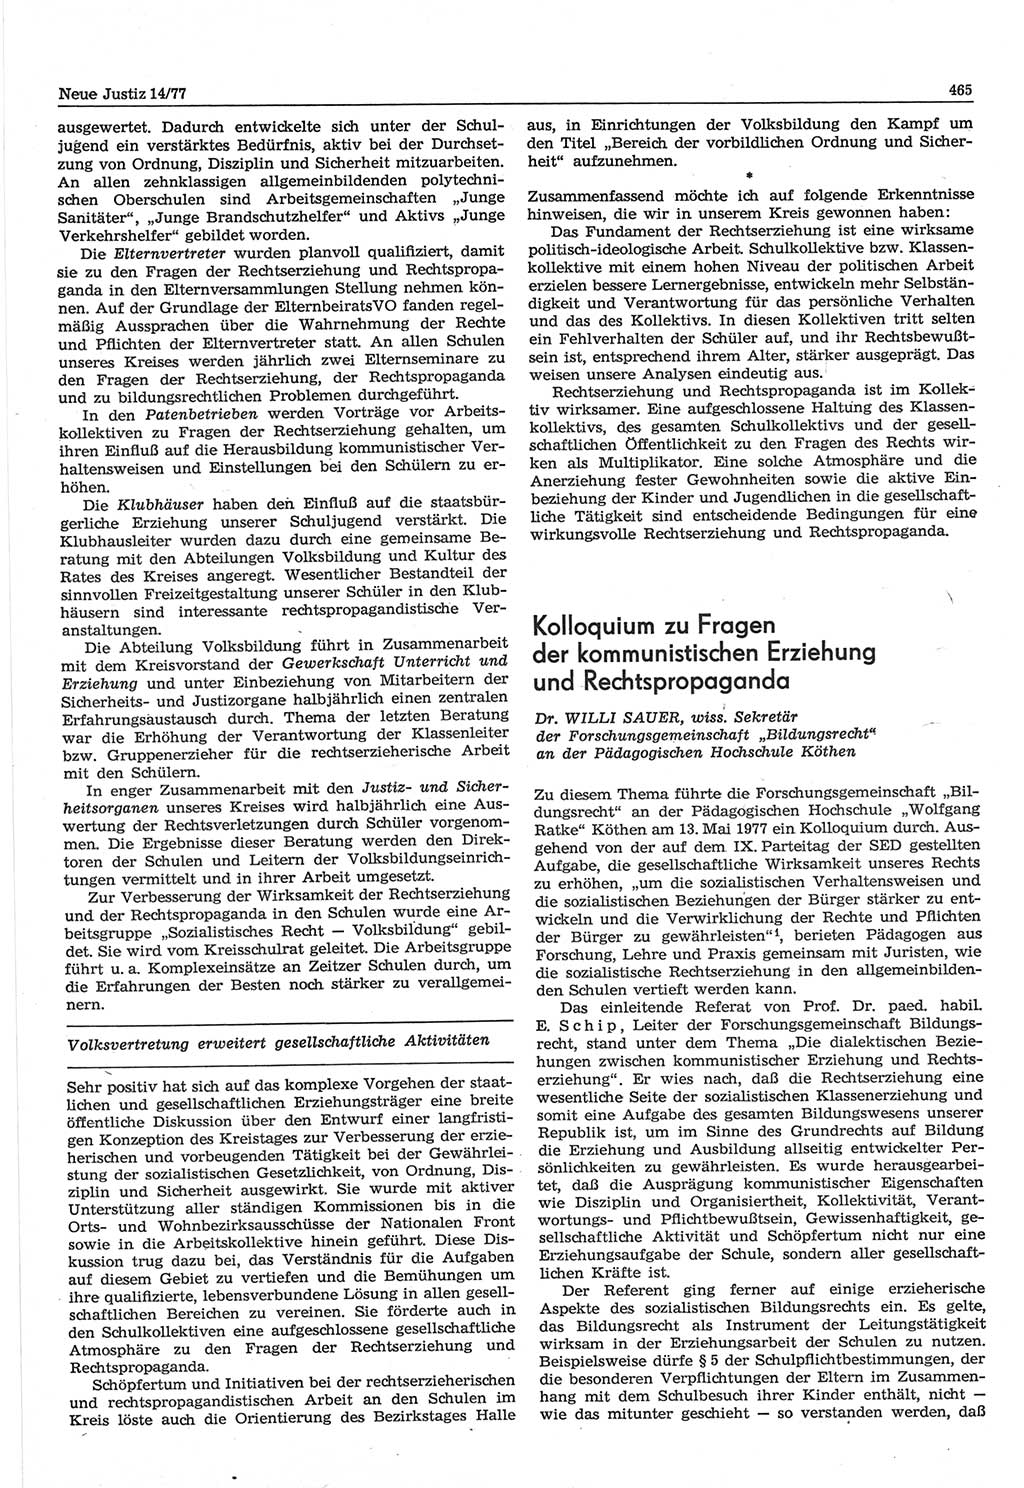 Neue Justiz (NJ), Zeitschrift für Recht und Rechtswissenschaft-Zeitschrift, sozialistisches Recht und Gesetzlichkeit, 31. Jahrgang 1977, Seite 465 (NJ DDR 1977, S. 465)